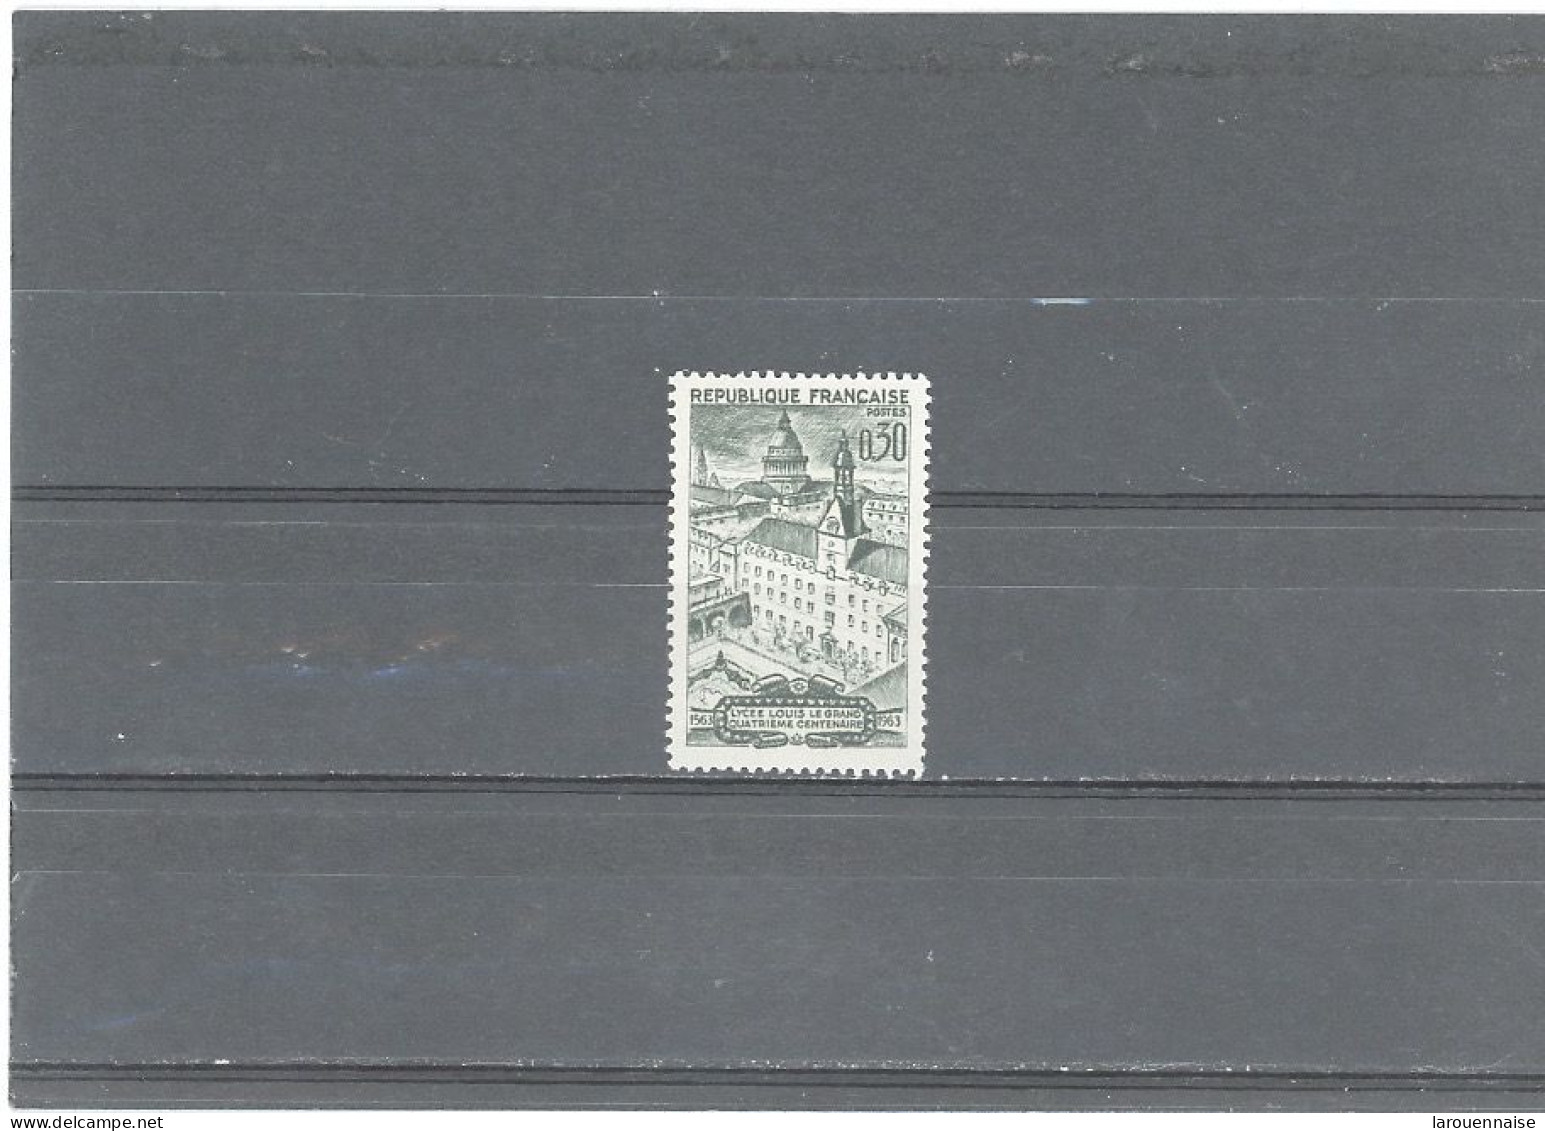 VARIÉTÉS -N°1388- N ** -0,30F LYCÉELOUIS LEGRAND - IMPRESSION RECTO  /VERSO - Unused Stamps